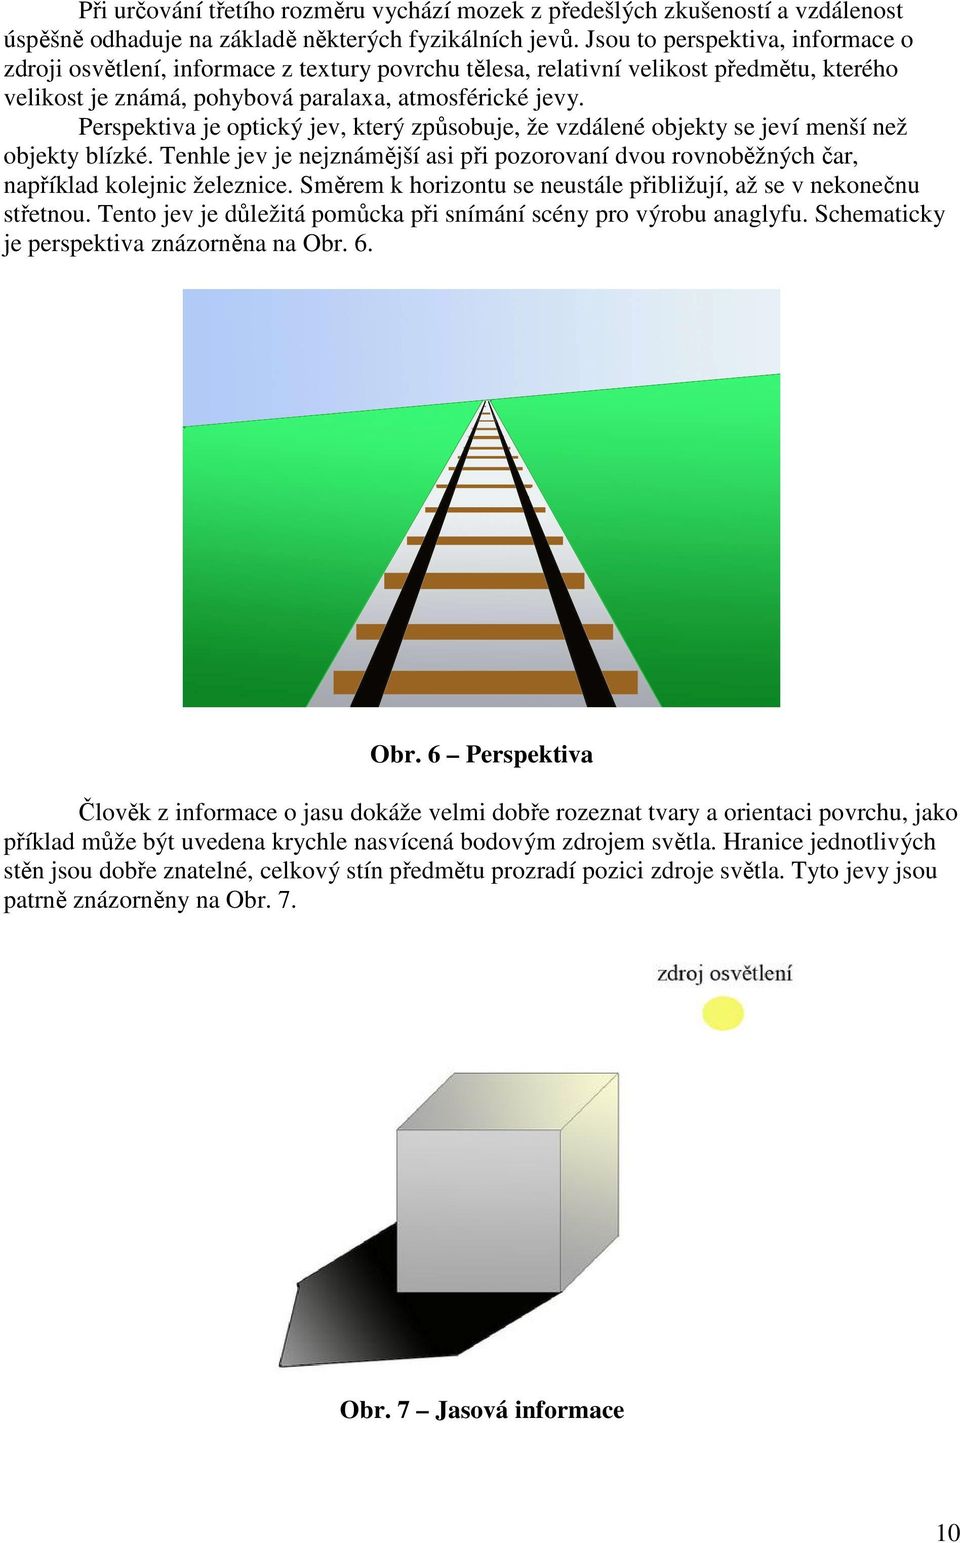 Perspektiva je optický jev, který způsobuje, že vzdálené objekty se jeví menší než objekty blízké. Tenhle jev je nejznámější asi při pozorovaní dvou rovnoběžných čar, například kolejnic železnice.